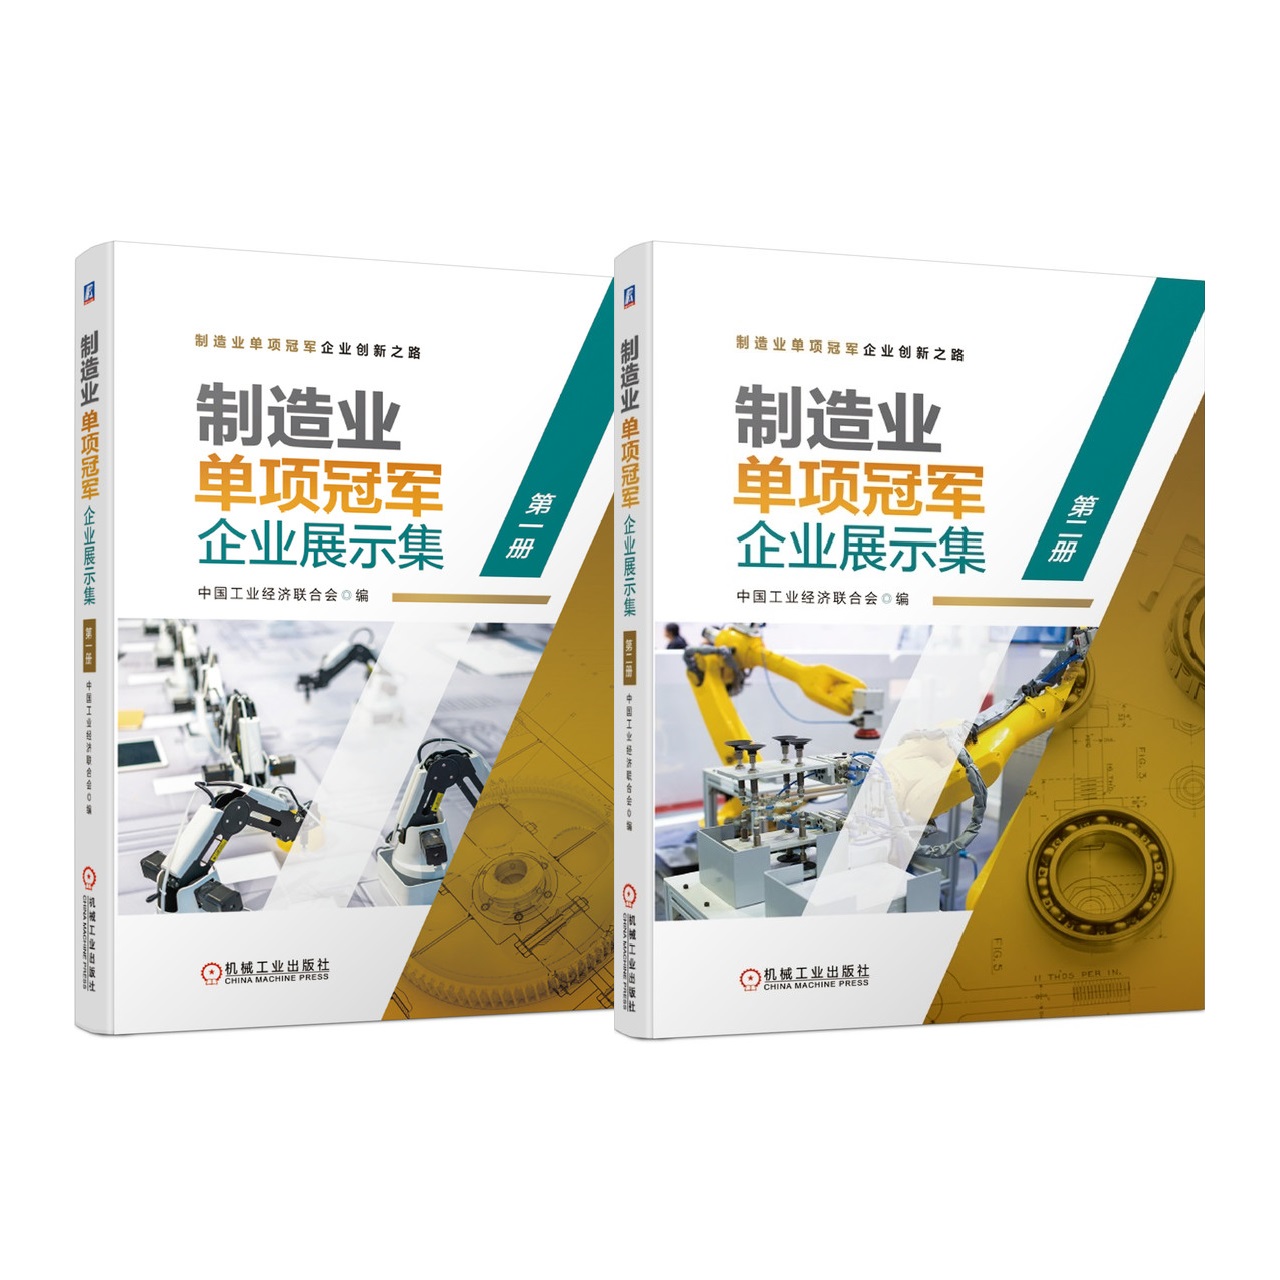 套装 制造业单项guan军企业展示集 共2册 第 一册 第二册 中国工业经济联合会9787111684657机械工业出版社